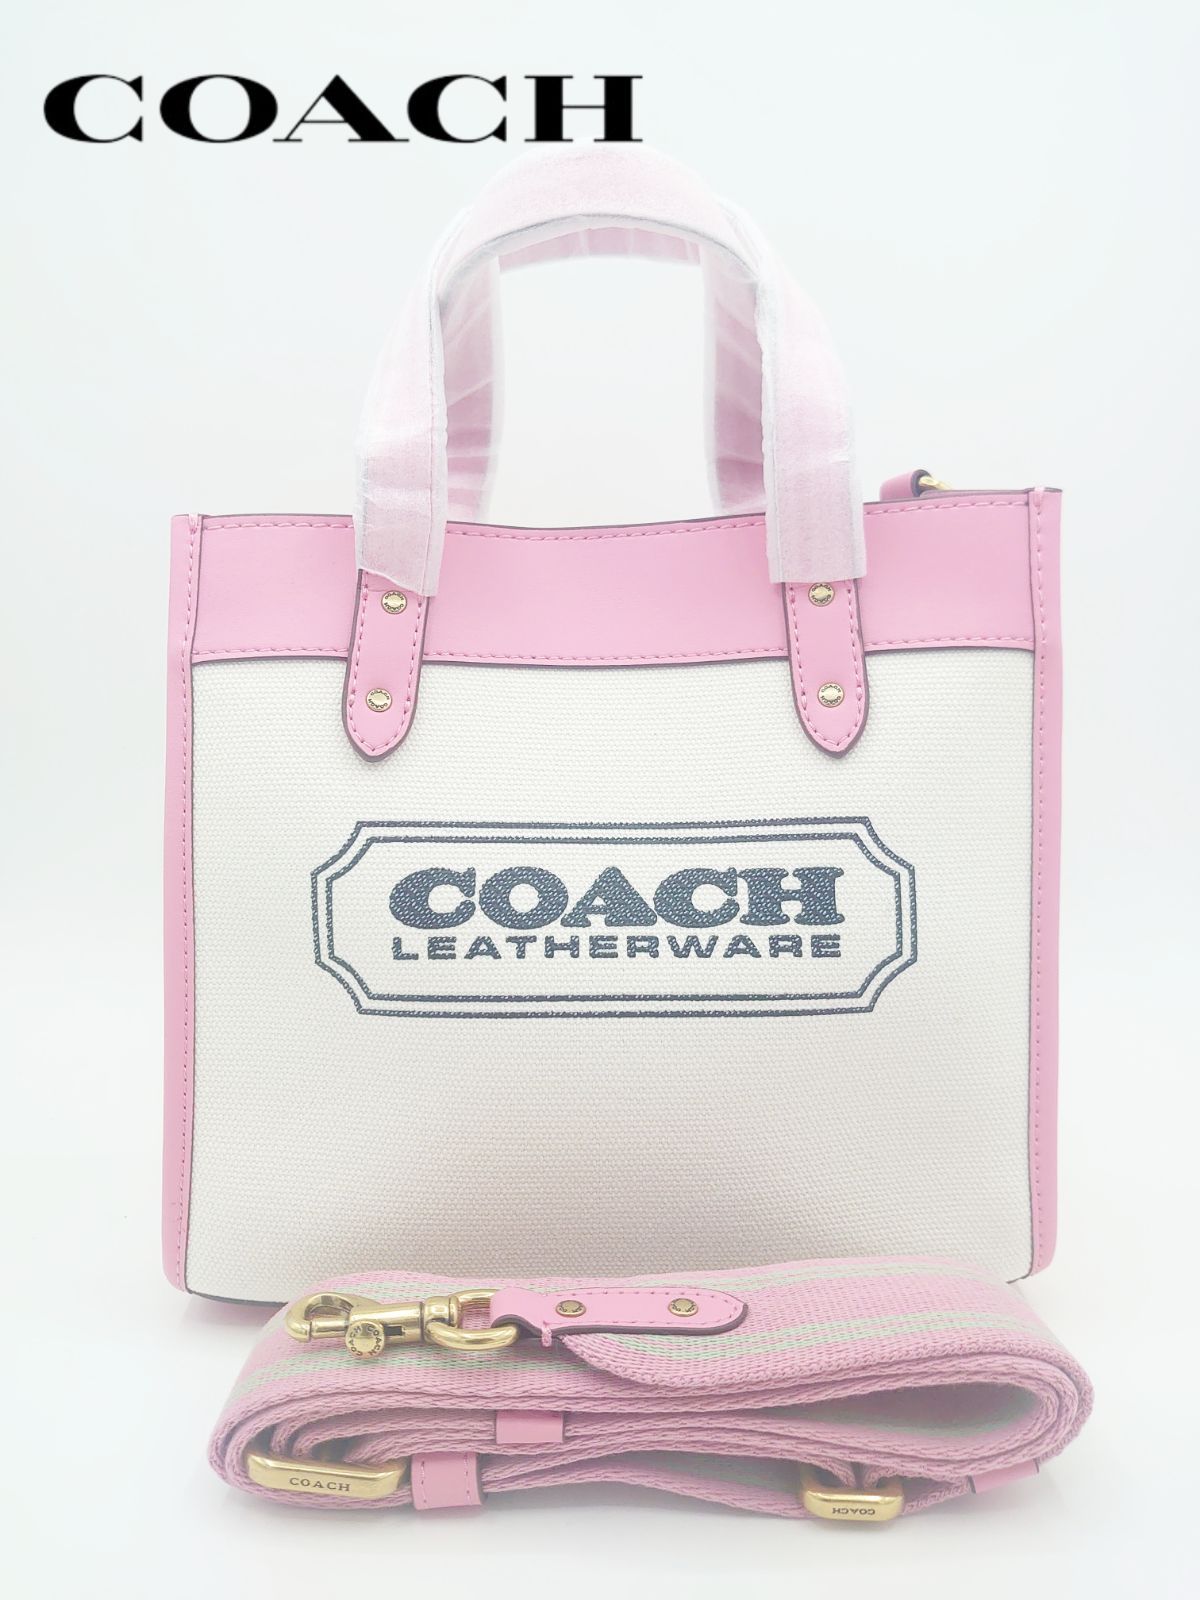 COACH トートバッグ ショルダーバッグ ピンク/ホワイト 2way - メルカリ